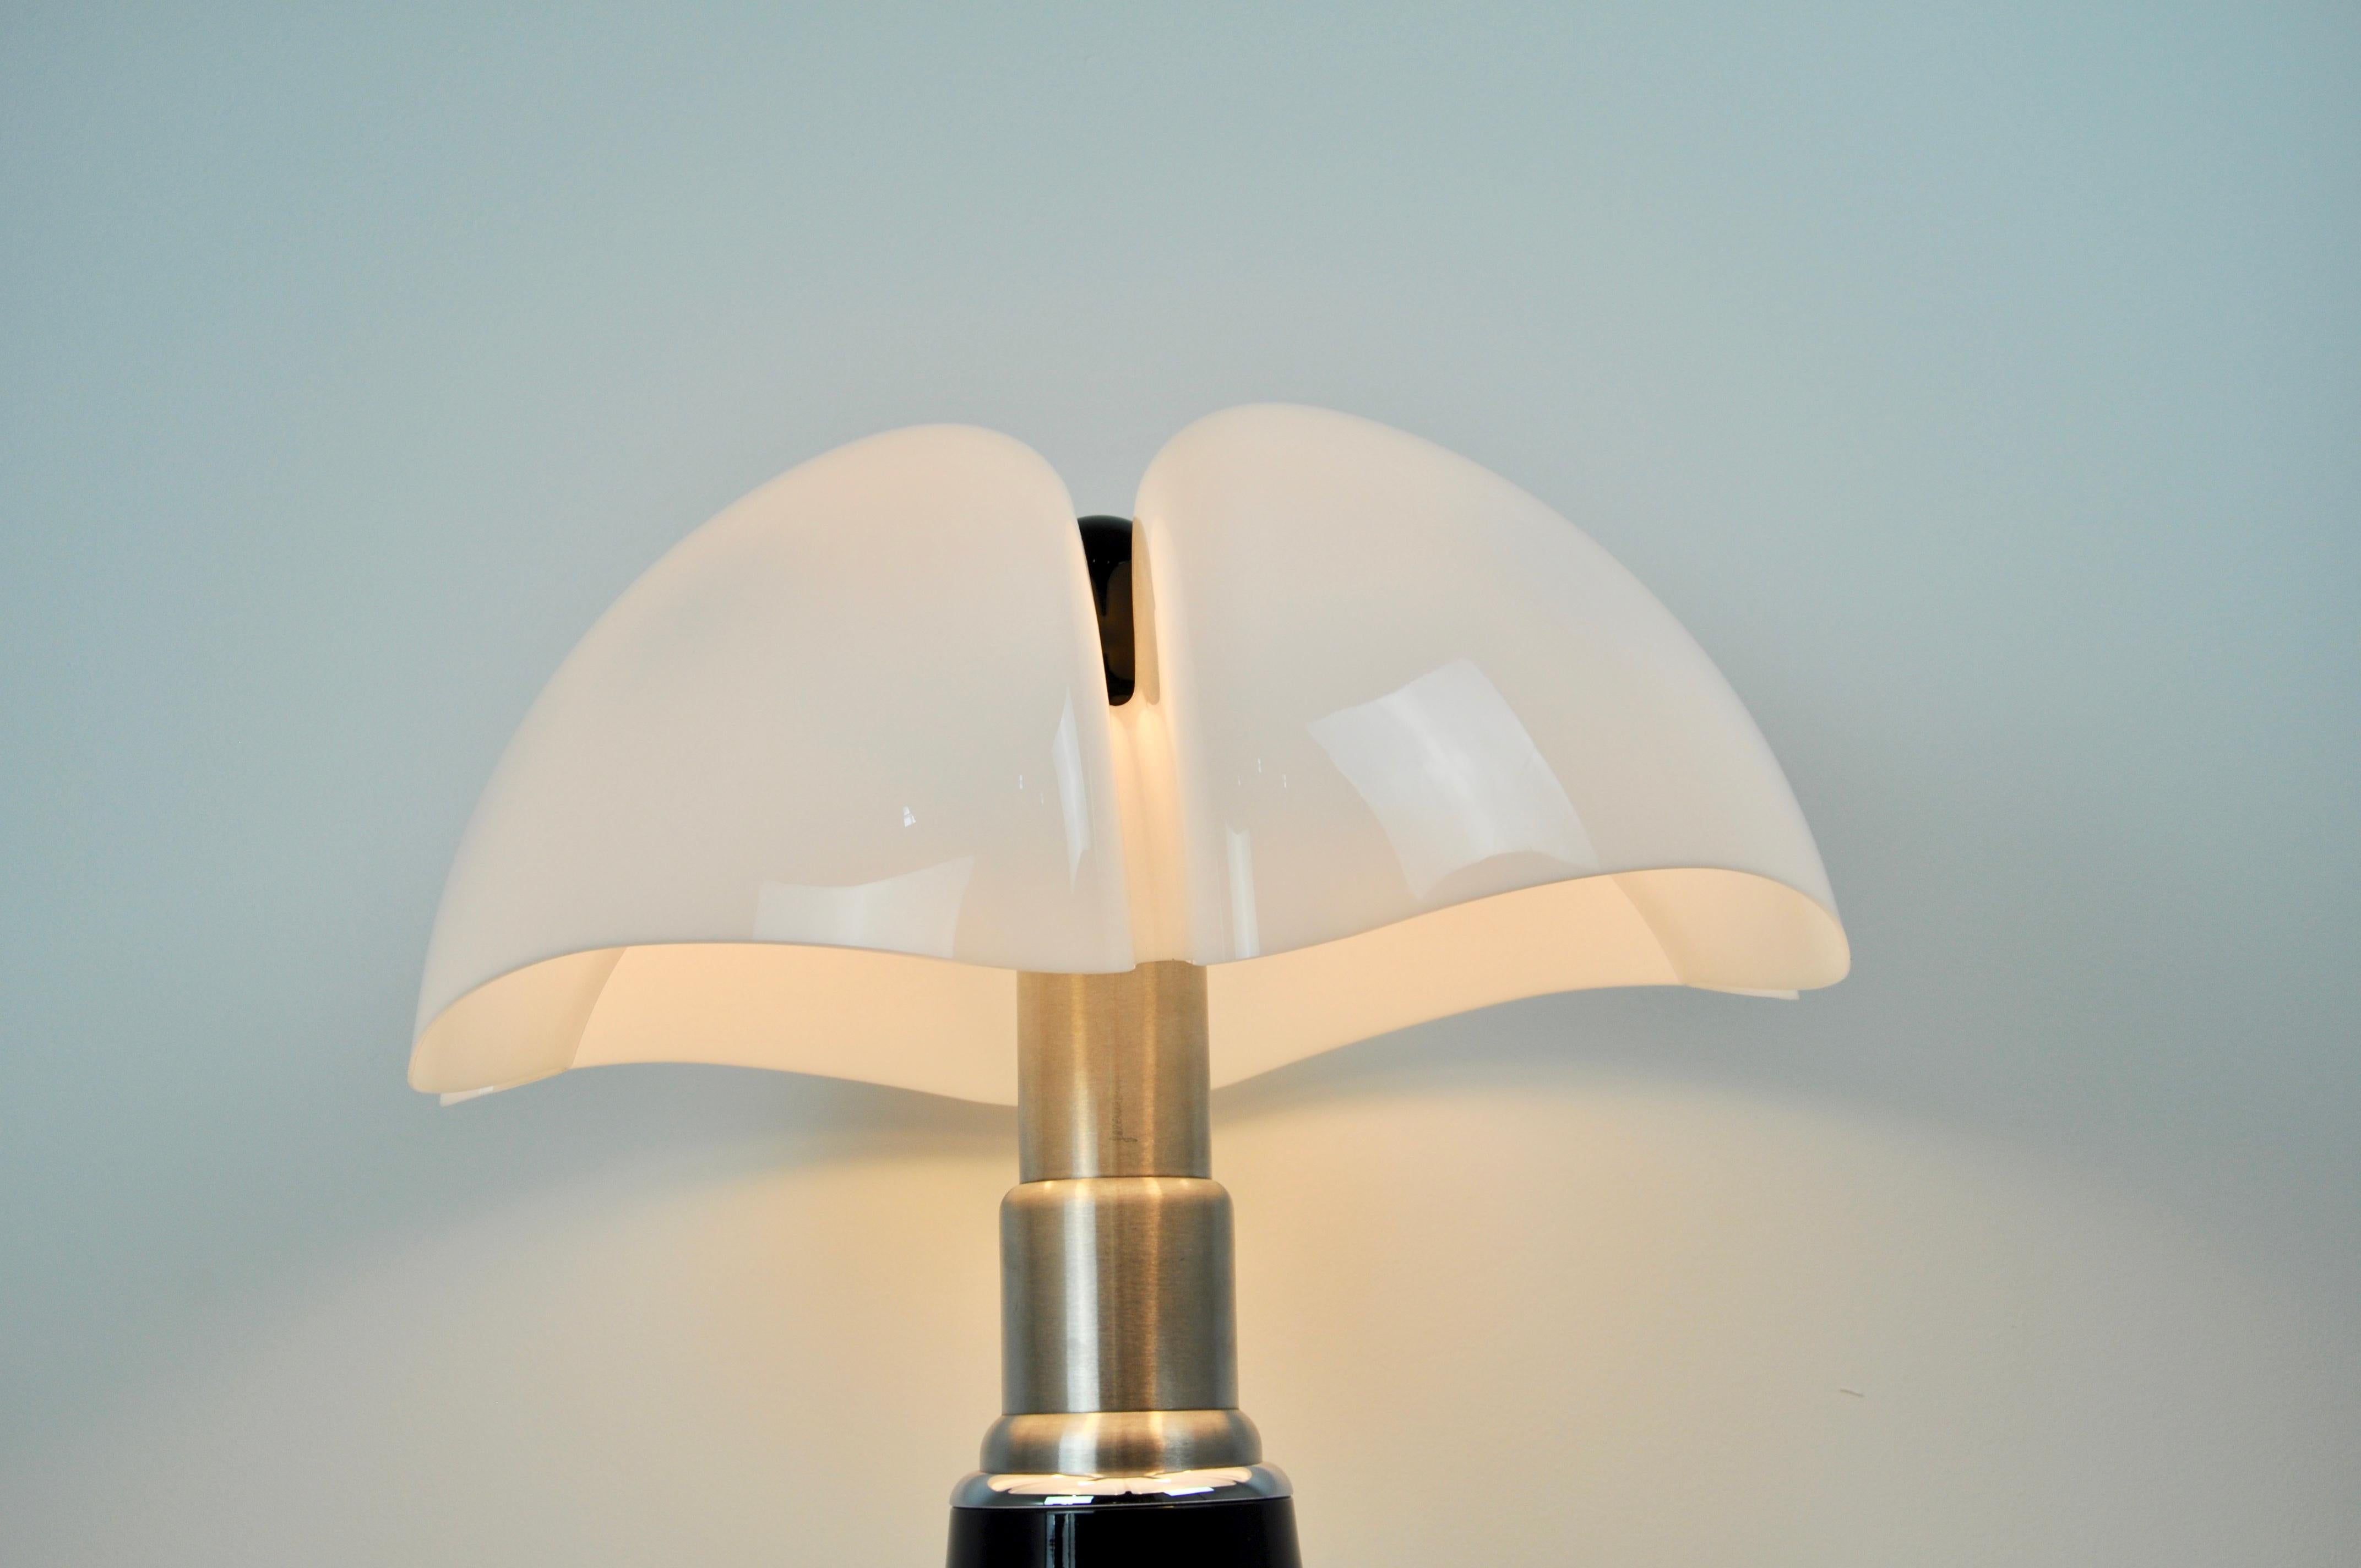 Italian Black Pipistrello Table Lamp by Gae Aulenti for Martinelli Luce